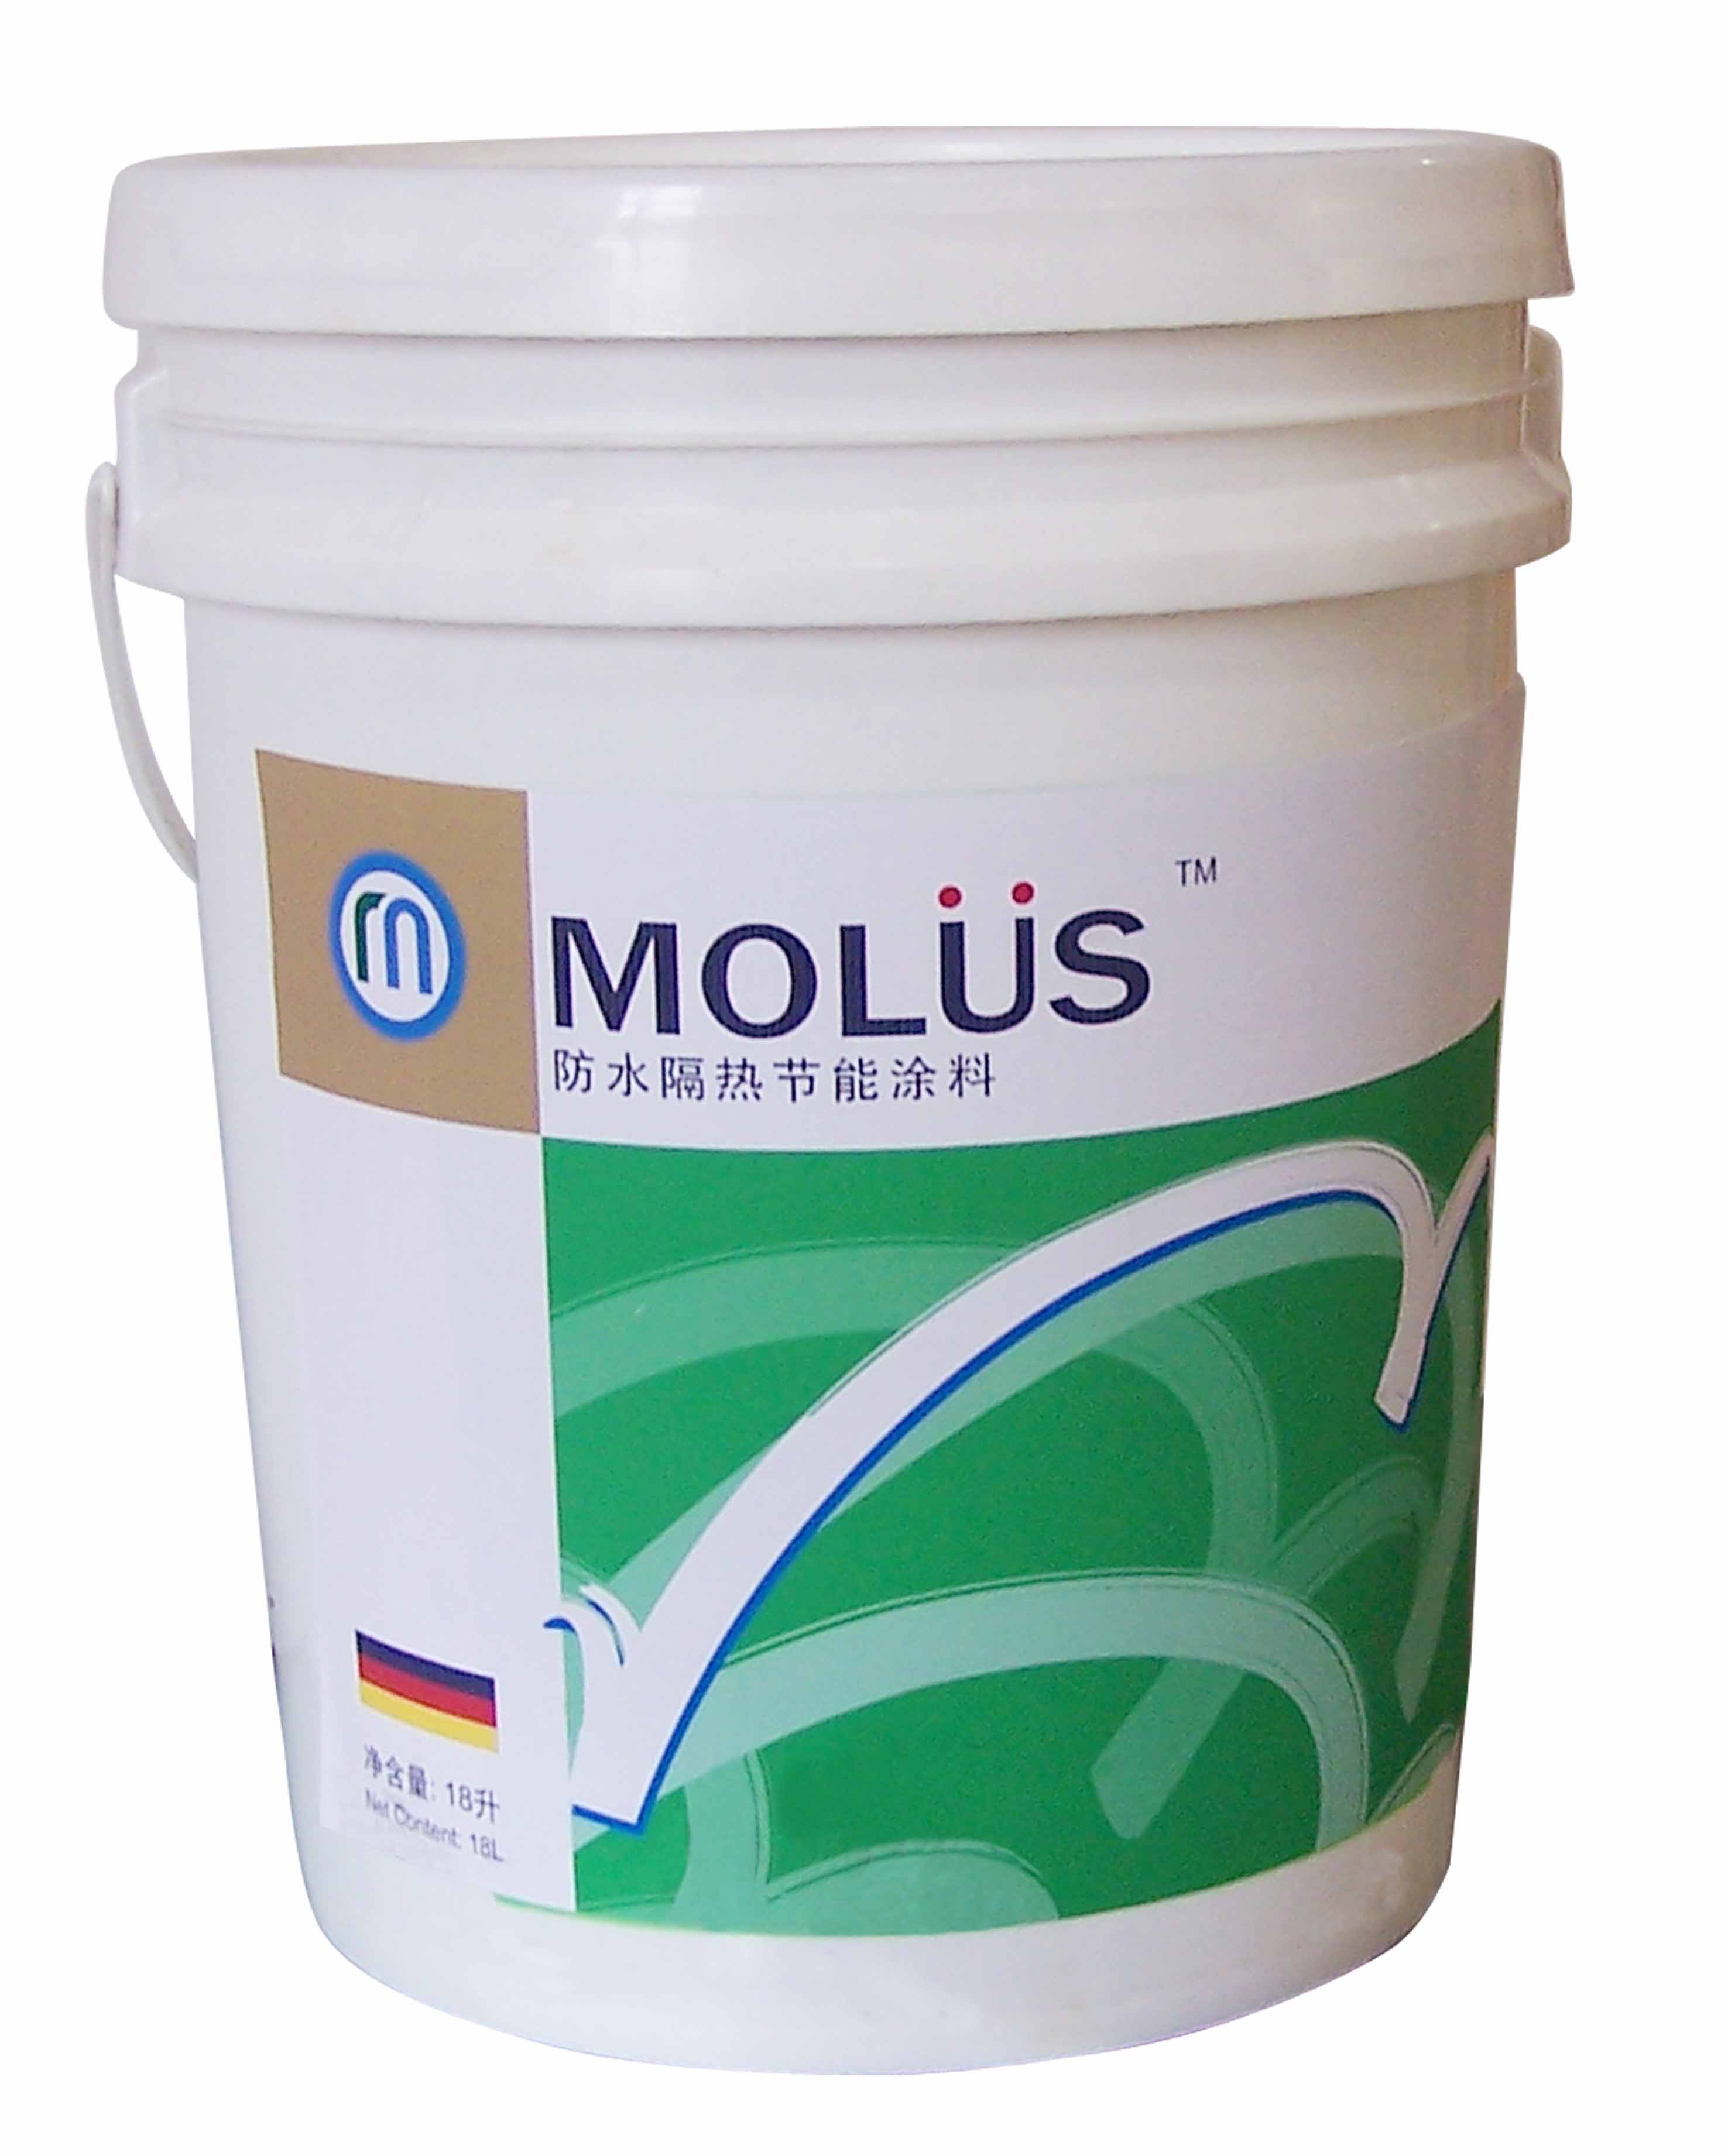 molus heat-insulation coating